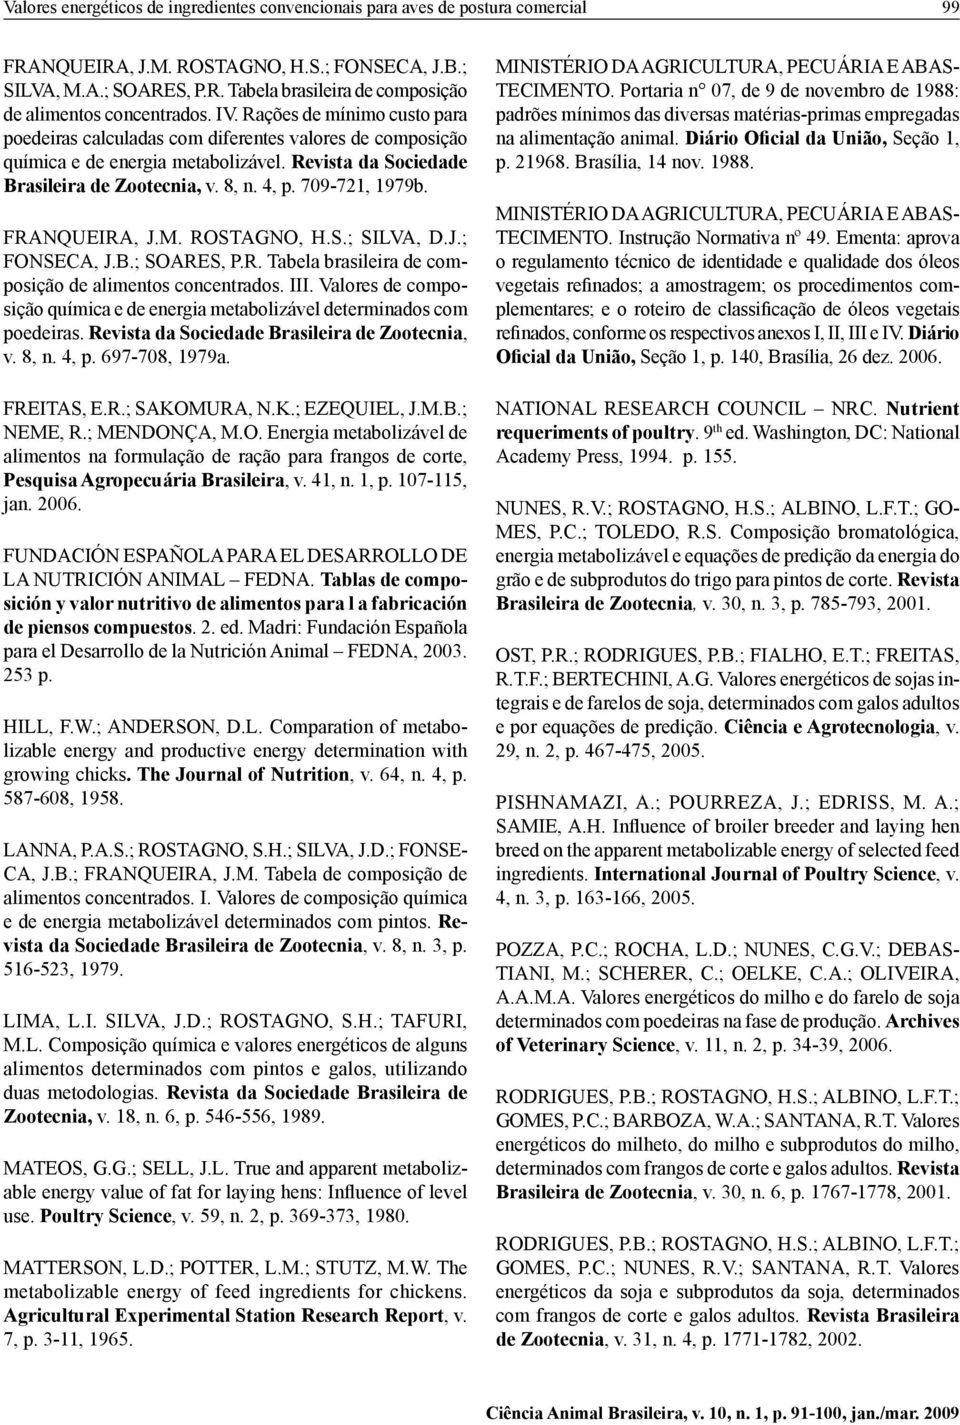 709-721, 1979b. FRANQUEIRA, J.M. ROSTAGNO, H.S.; SILVA, D.J.; FONSECA, J.B.; SOARES, P.R. Tabela brasileira de composição de alimentos concentrados. III.